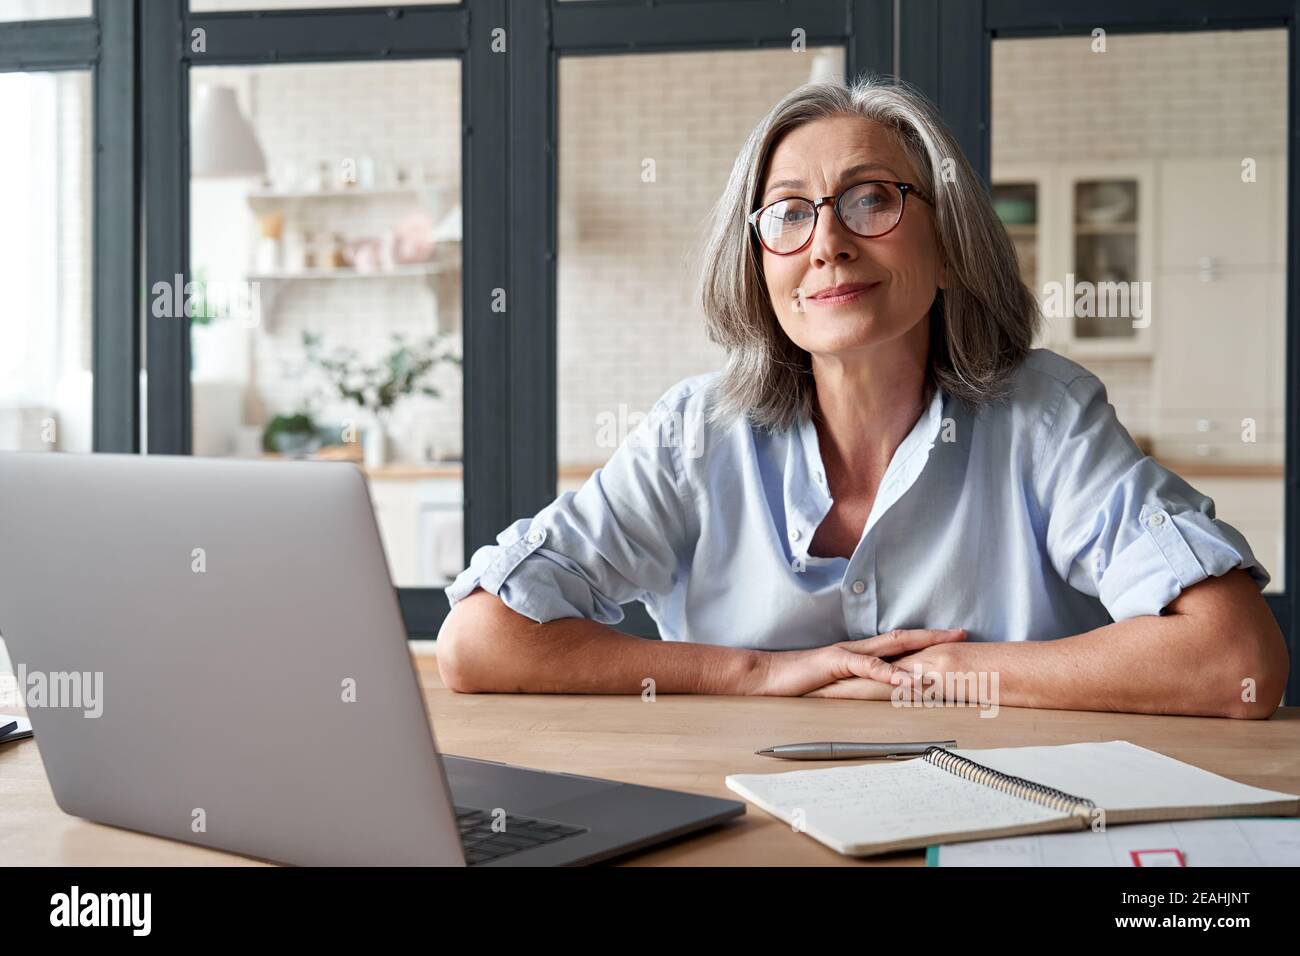 Lächelnd reife Frau mittleren Alters sitzt am Arbeitsplatz mit Laptop, Porträt. Stockfoto